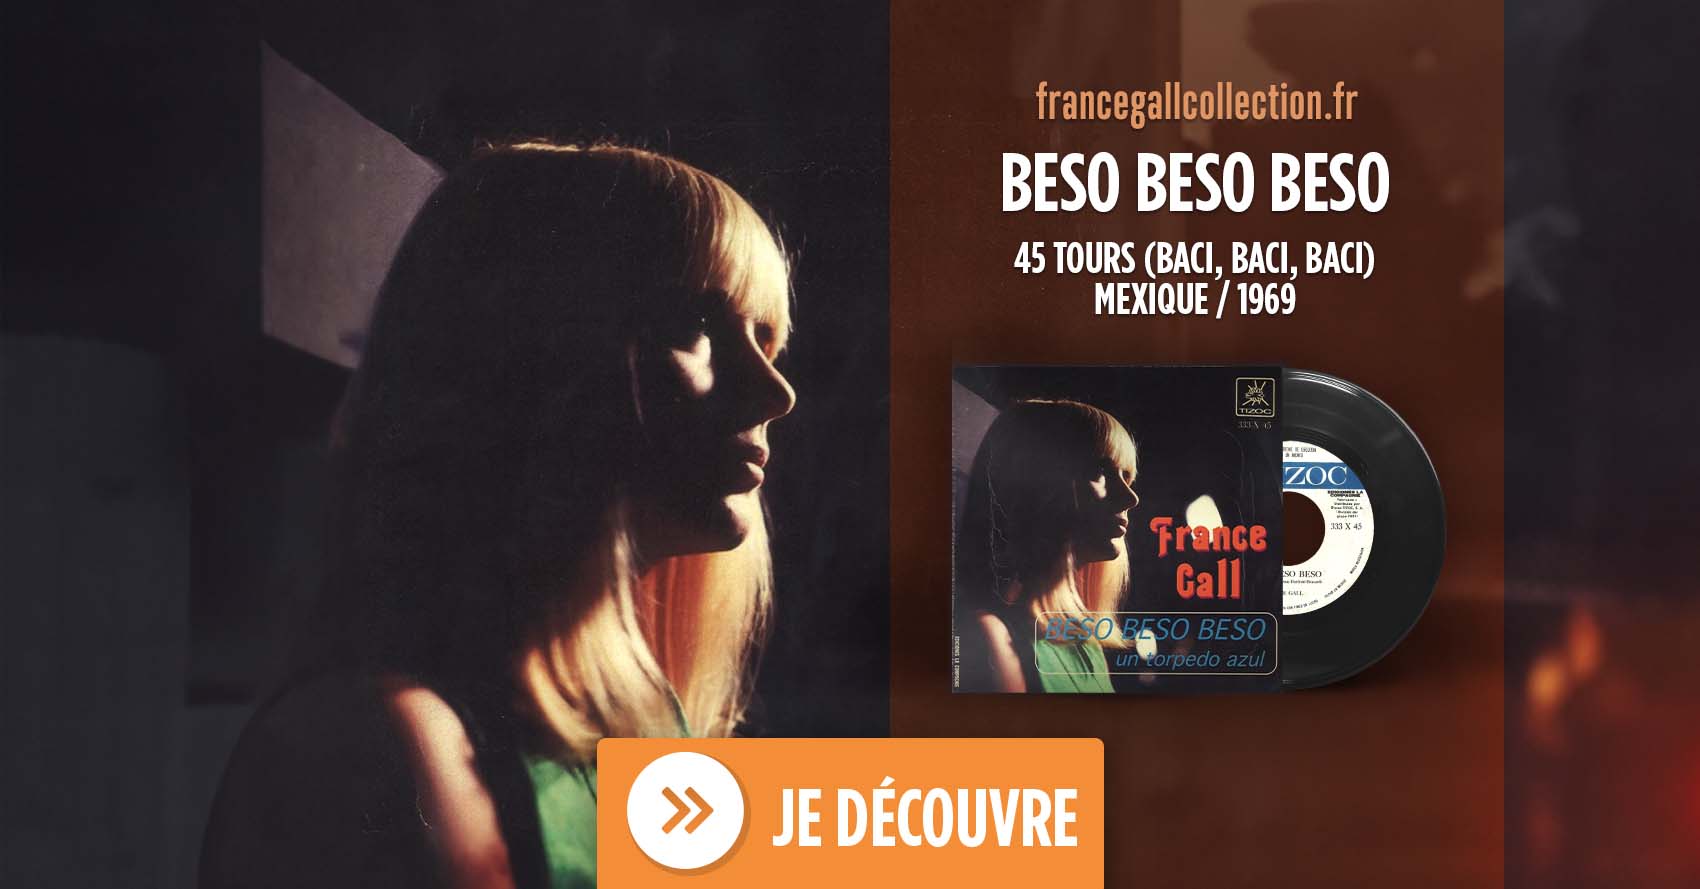 Cette édition au format 45 tours est en provenance du Mexique et contient les titres Beso Beso Beso (Baci, Baci, Baci) et Un torpedo azul (La Torpedo bleue (Il Topolino blu))